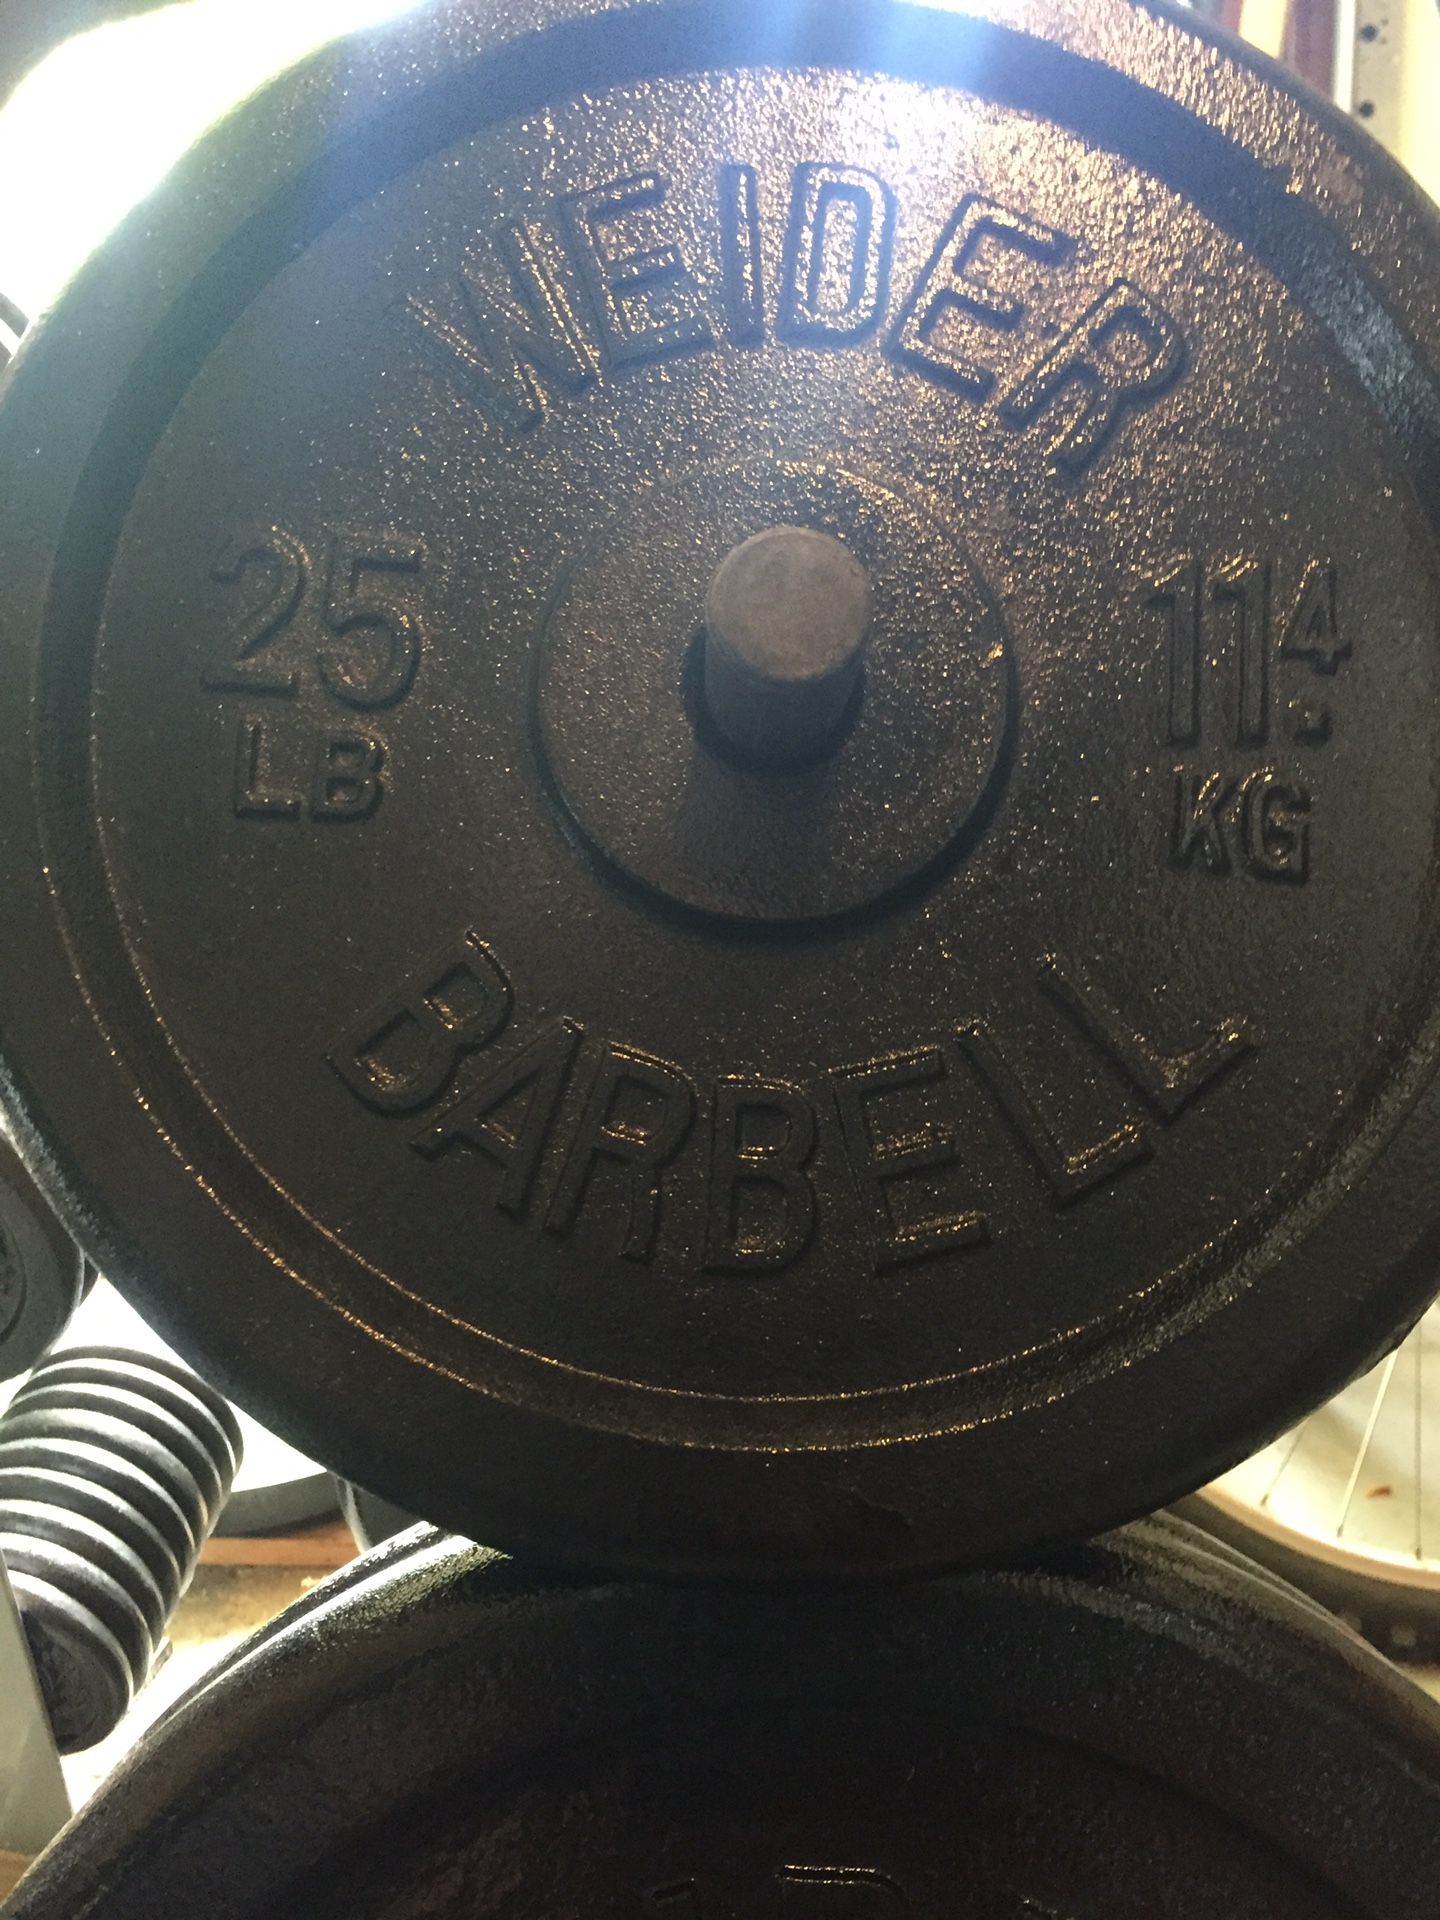 WEIDER BARBELL 25 lb Standard Weight Plates $100/pair